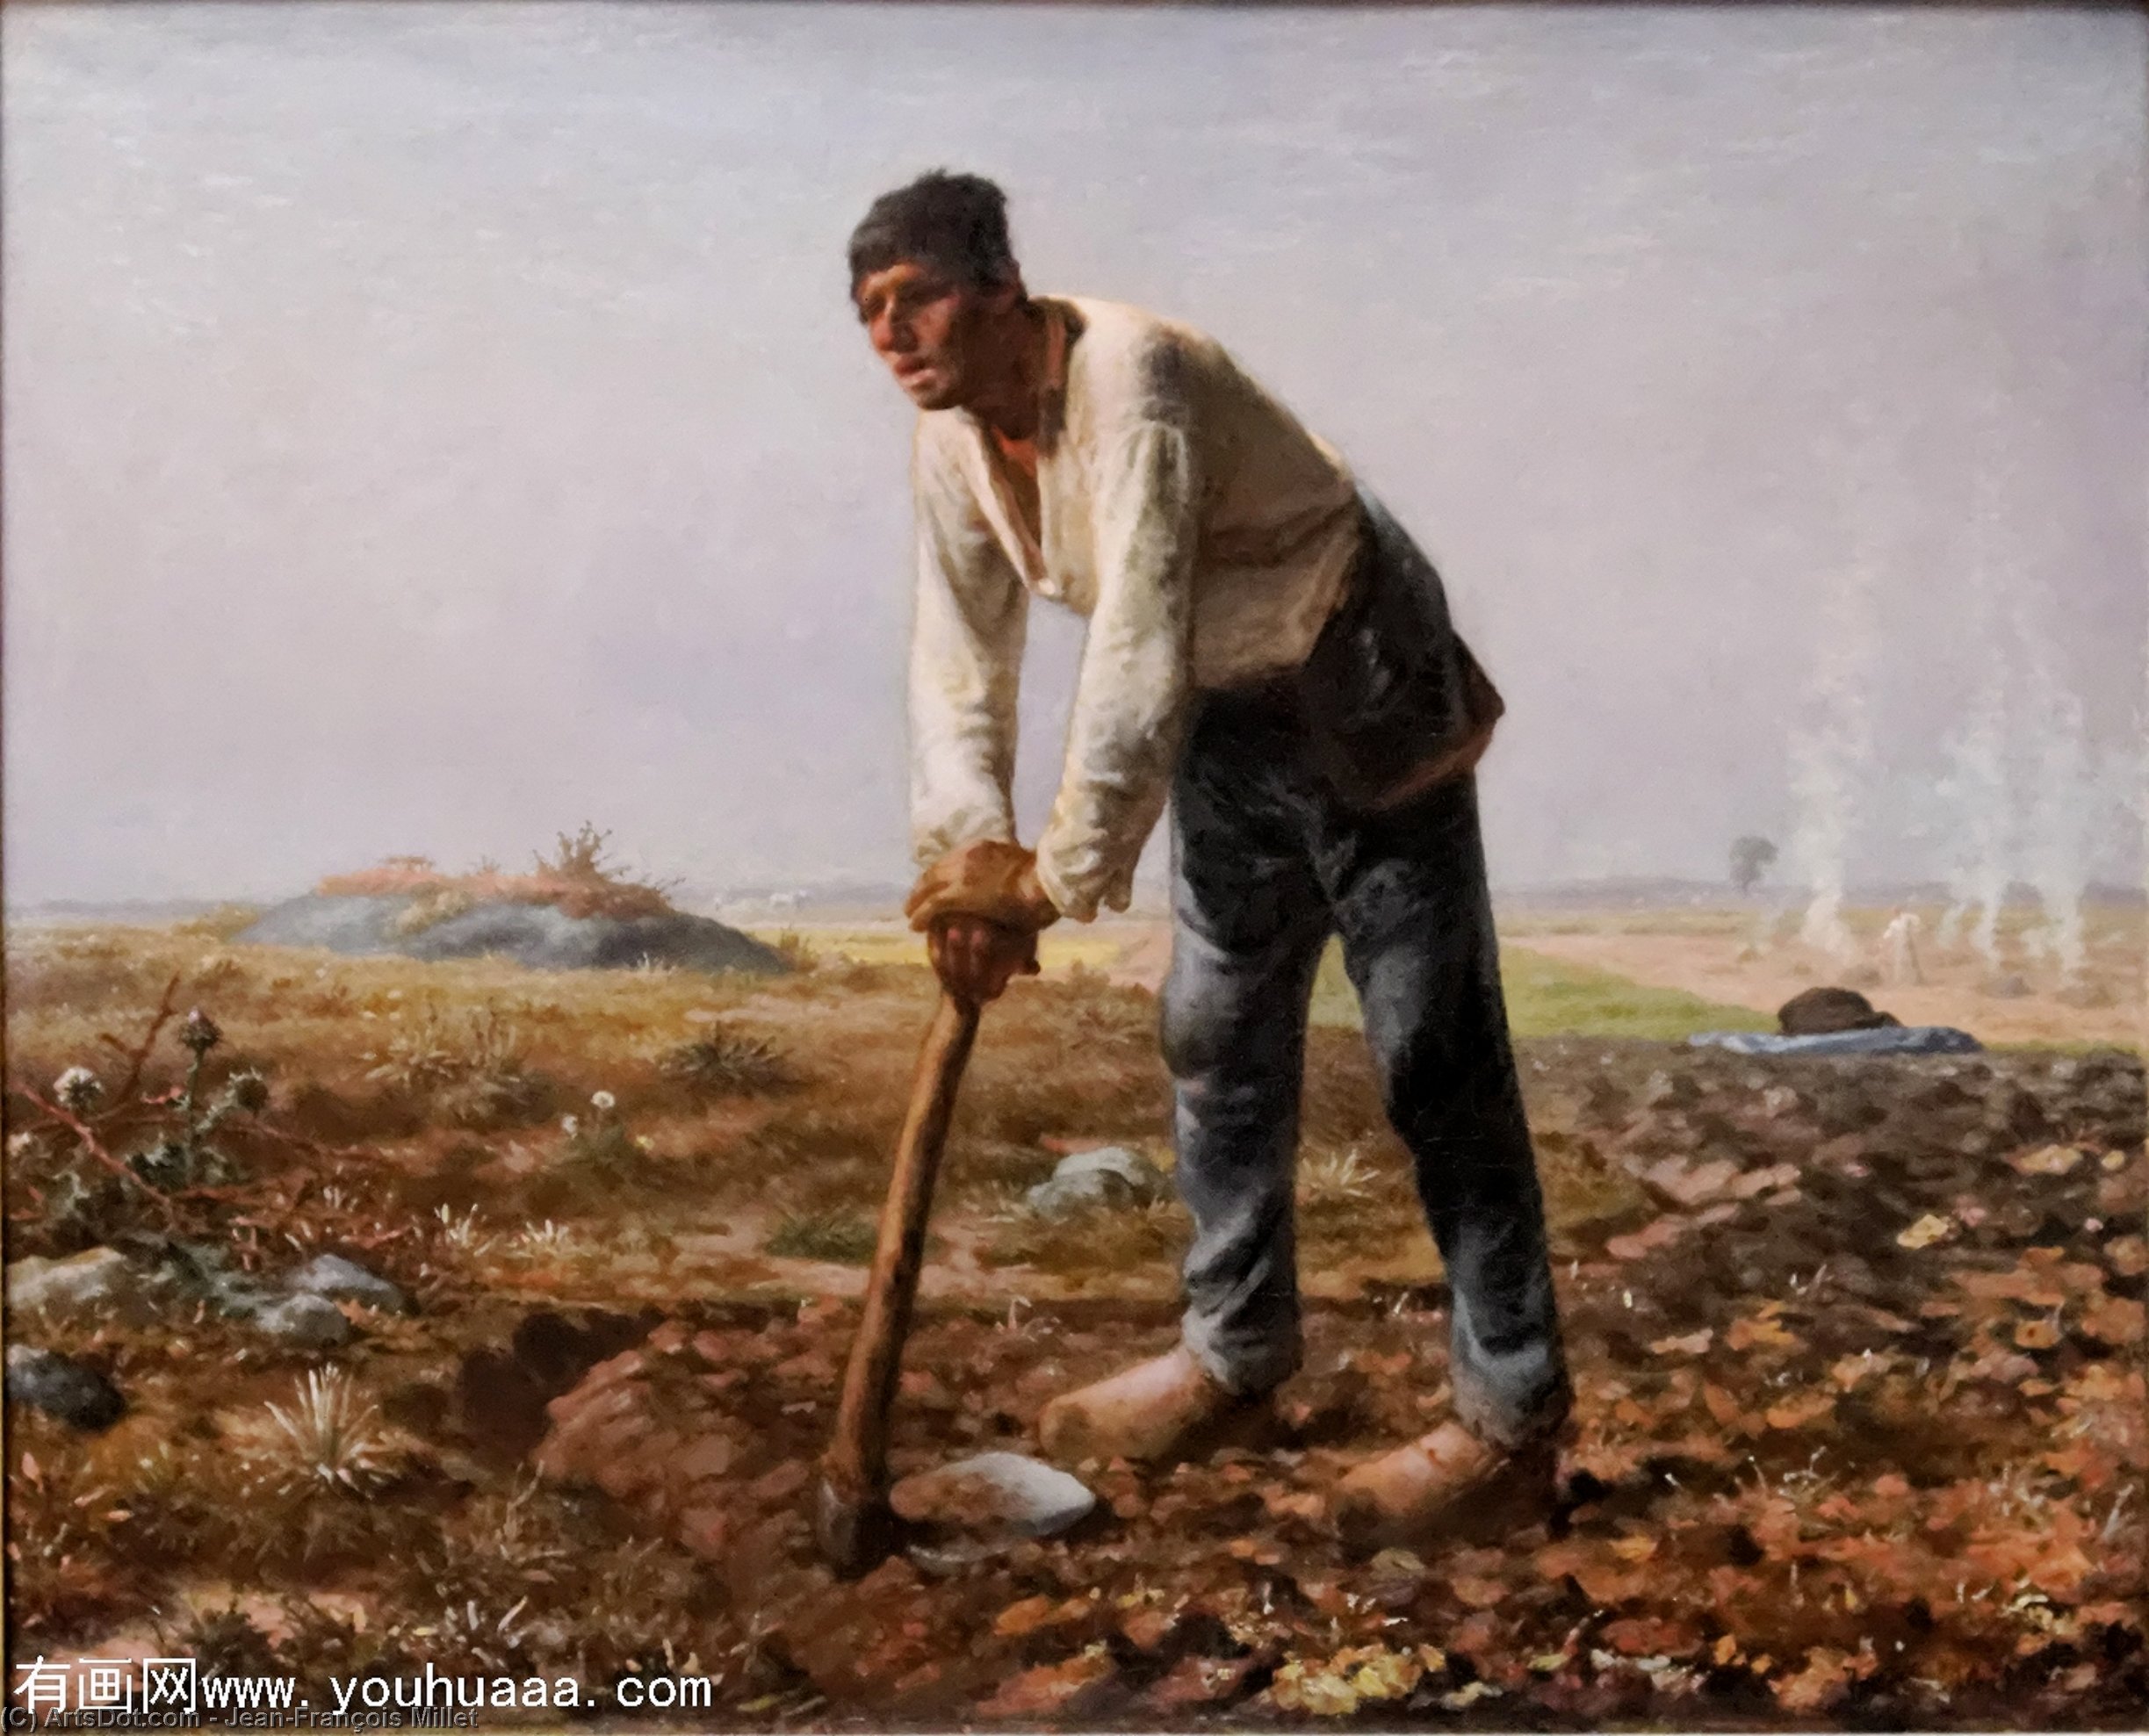 WikiOO.org - Enciklopedija likovnih umjetnosti - Slikarstvo, umjetnička djela Jean-François Millet - The Man with the Hoe